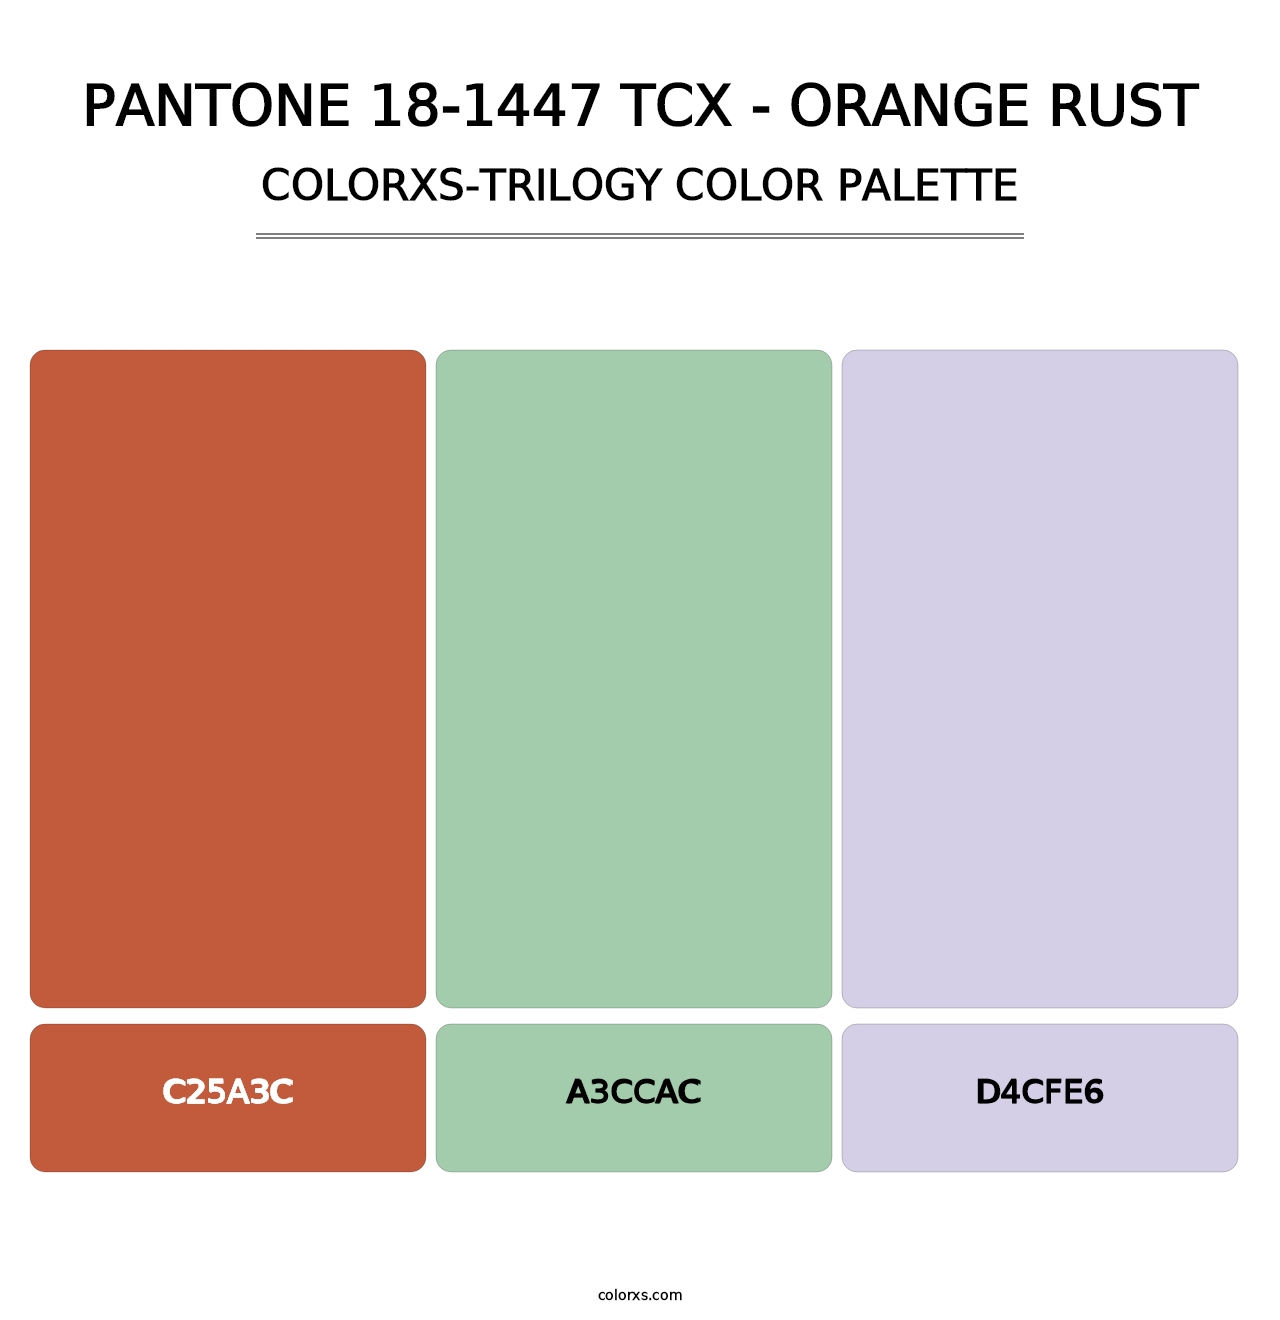 PANTONE 18-1447 TCX - Orange Rust - Colorxs Trilogy Palette